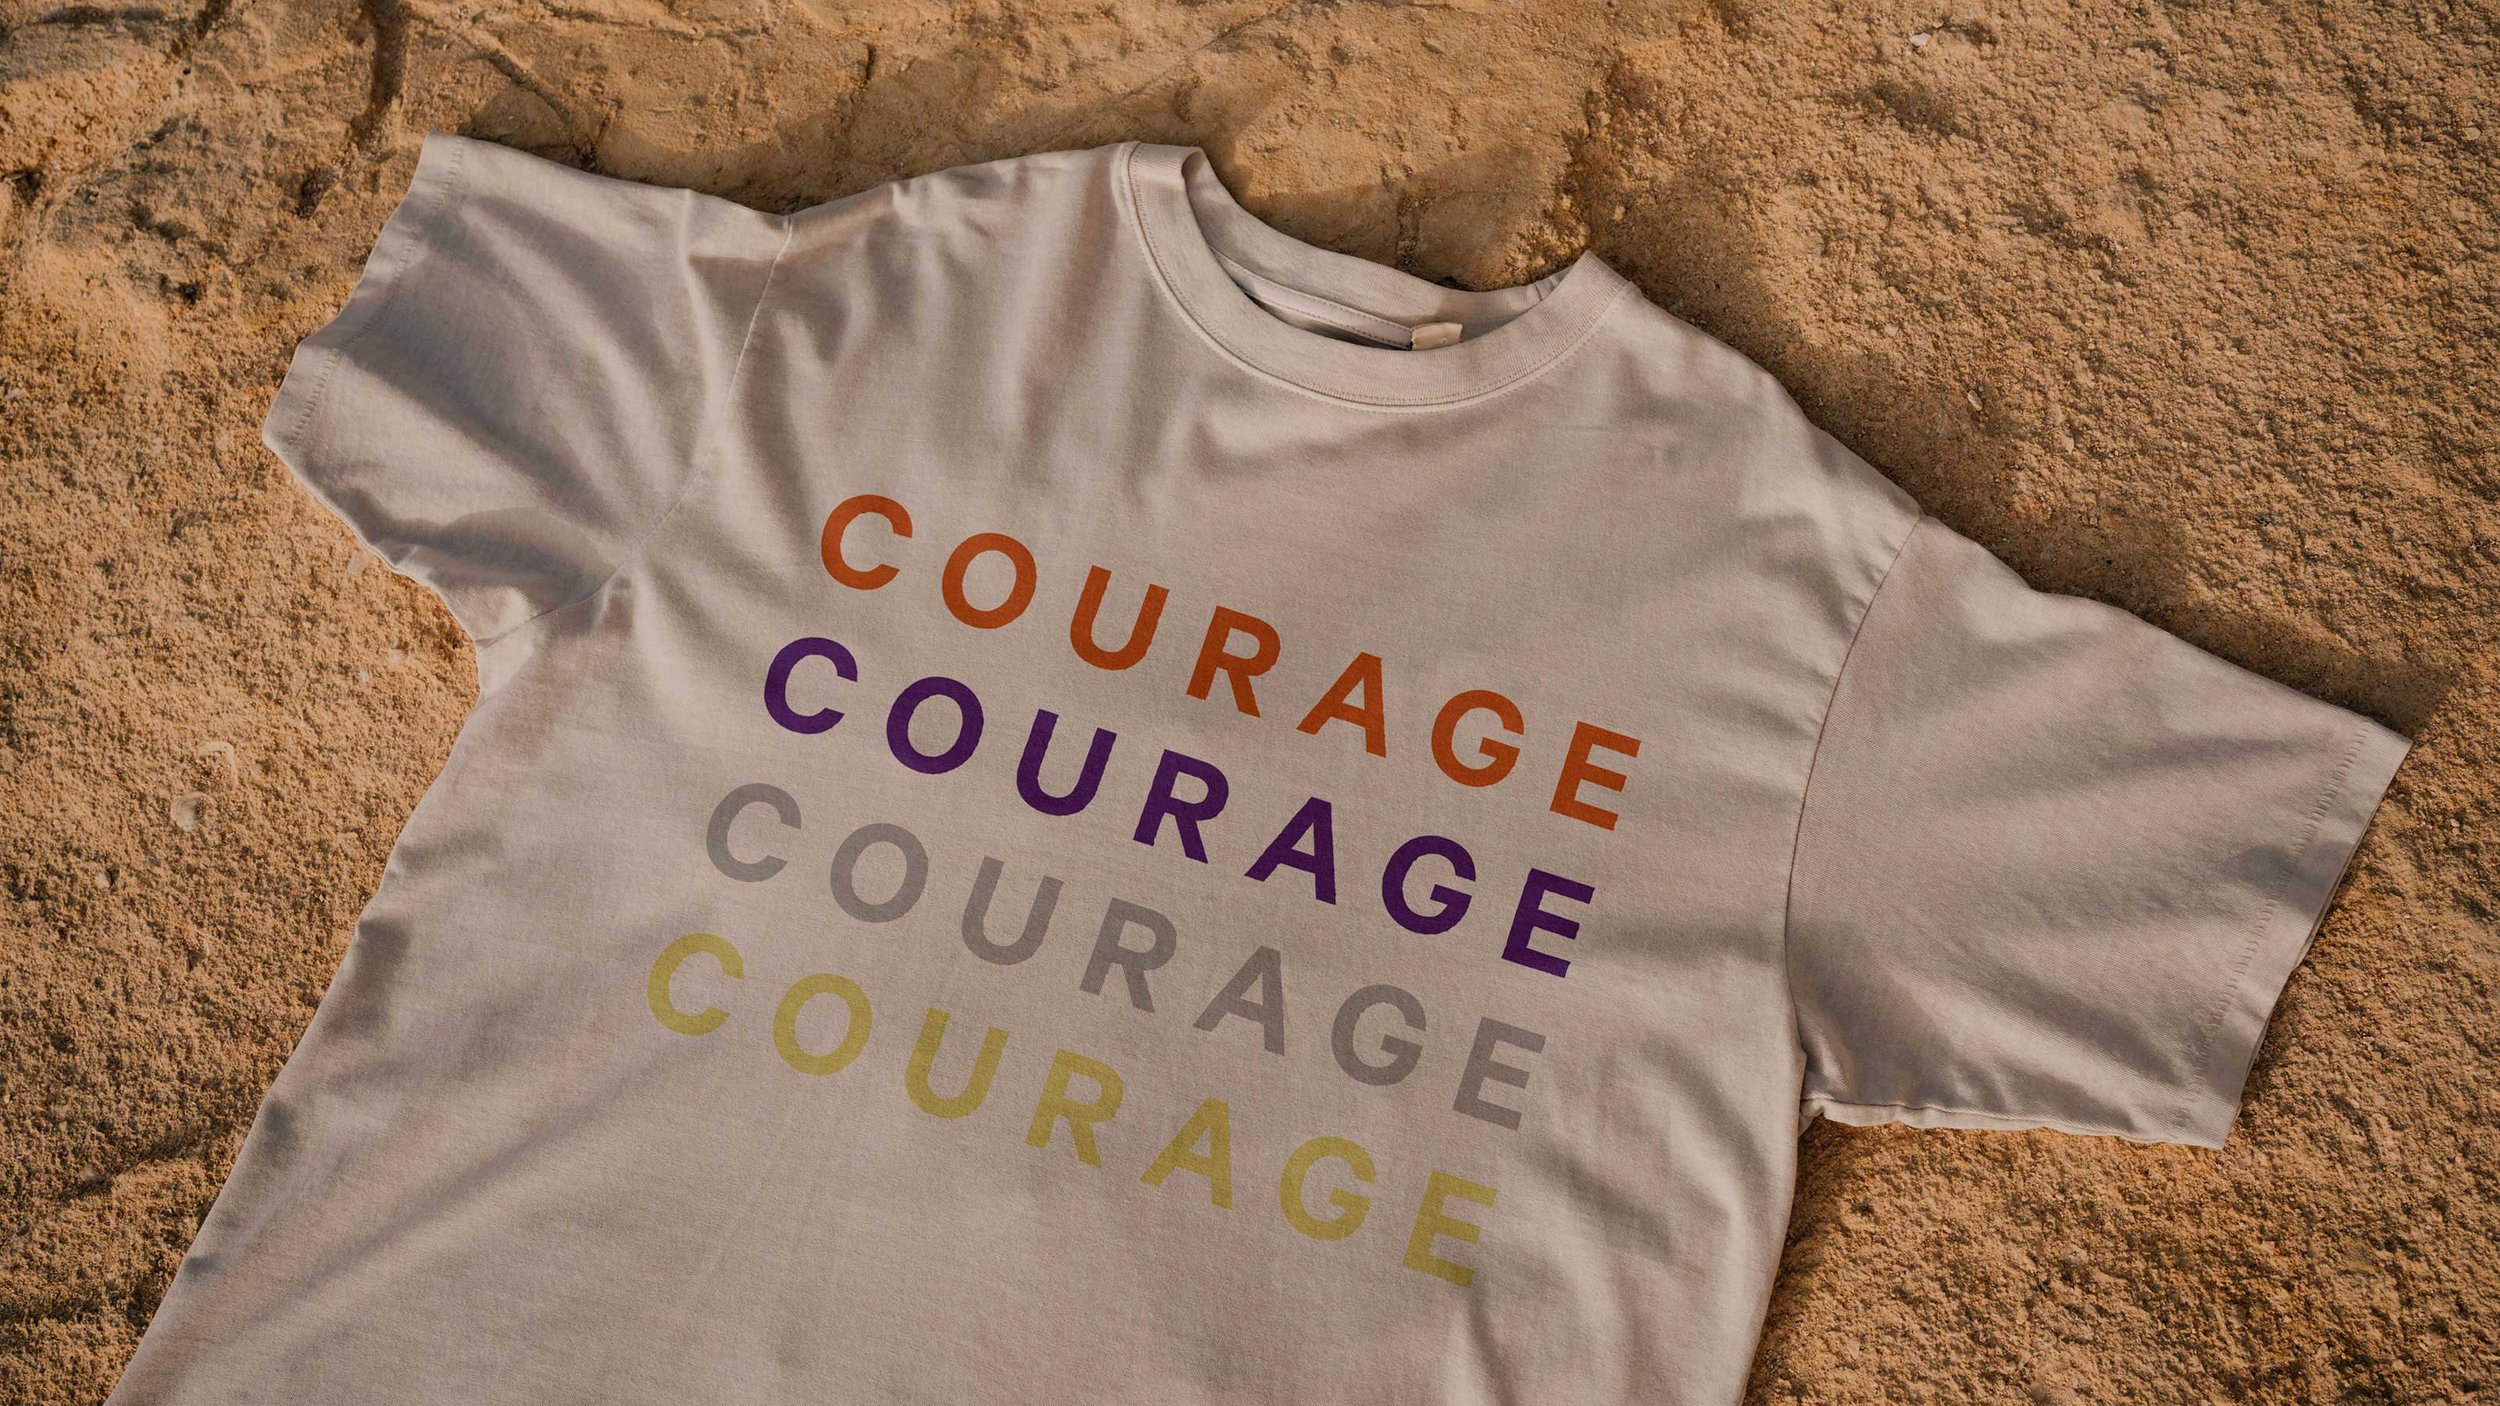 Anna-Pirot-Shirt-Gestaltung-Courage-Badias-Kitchen.jpg